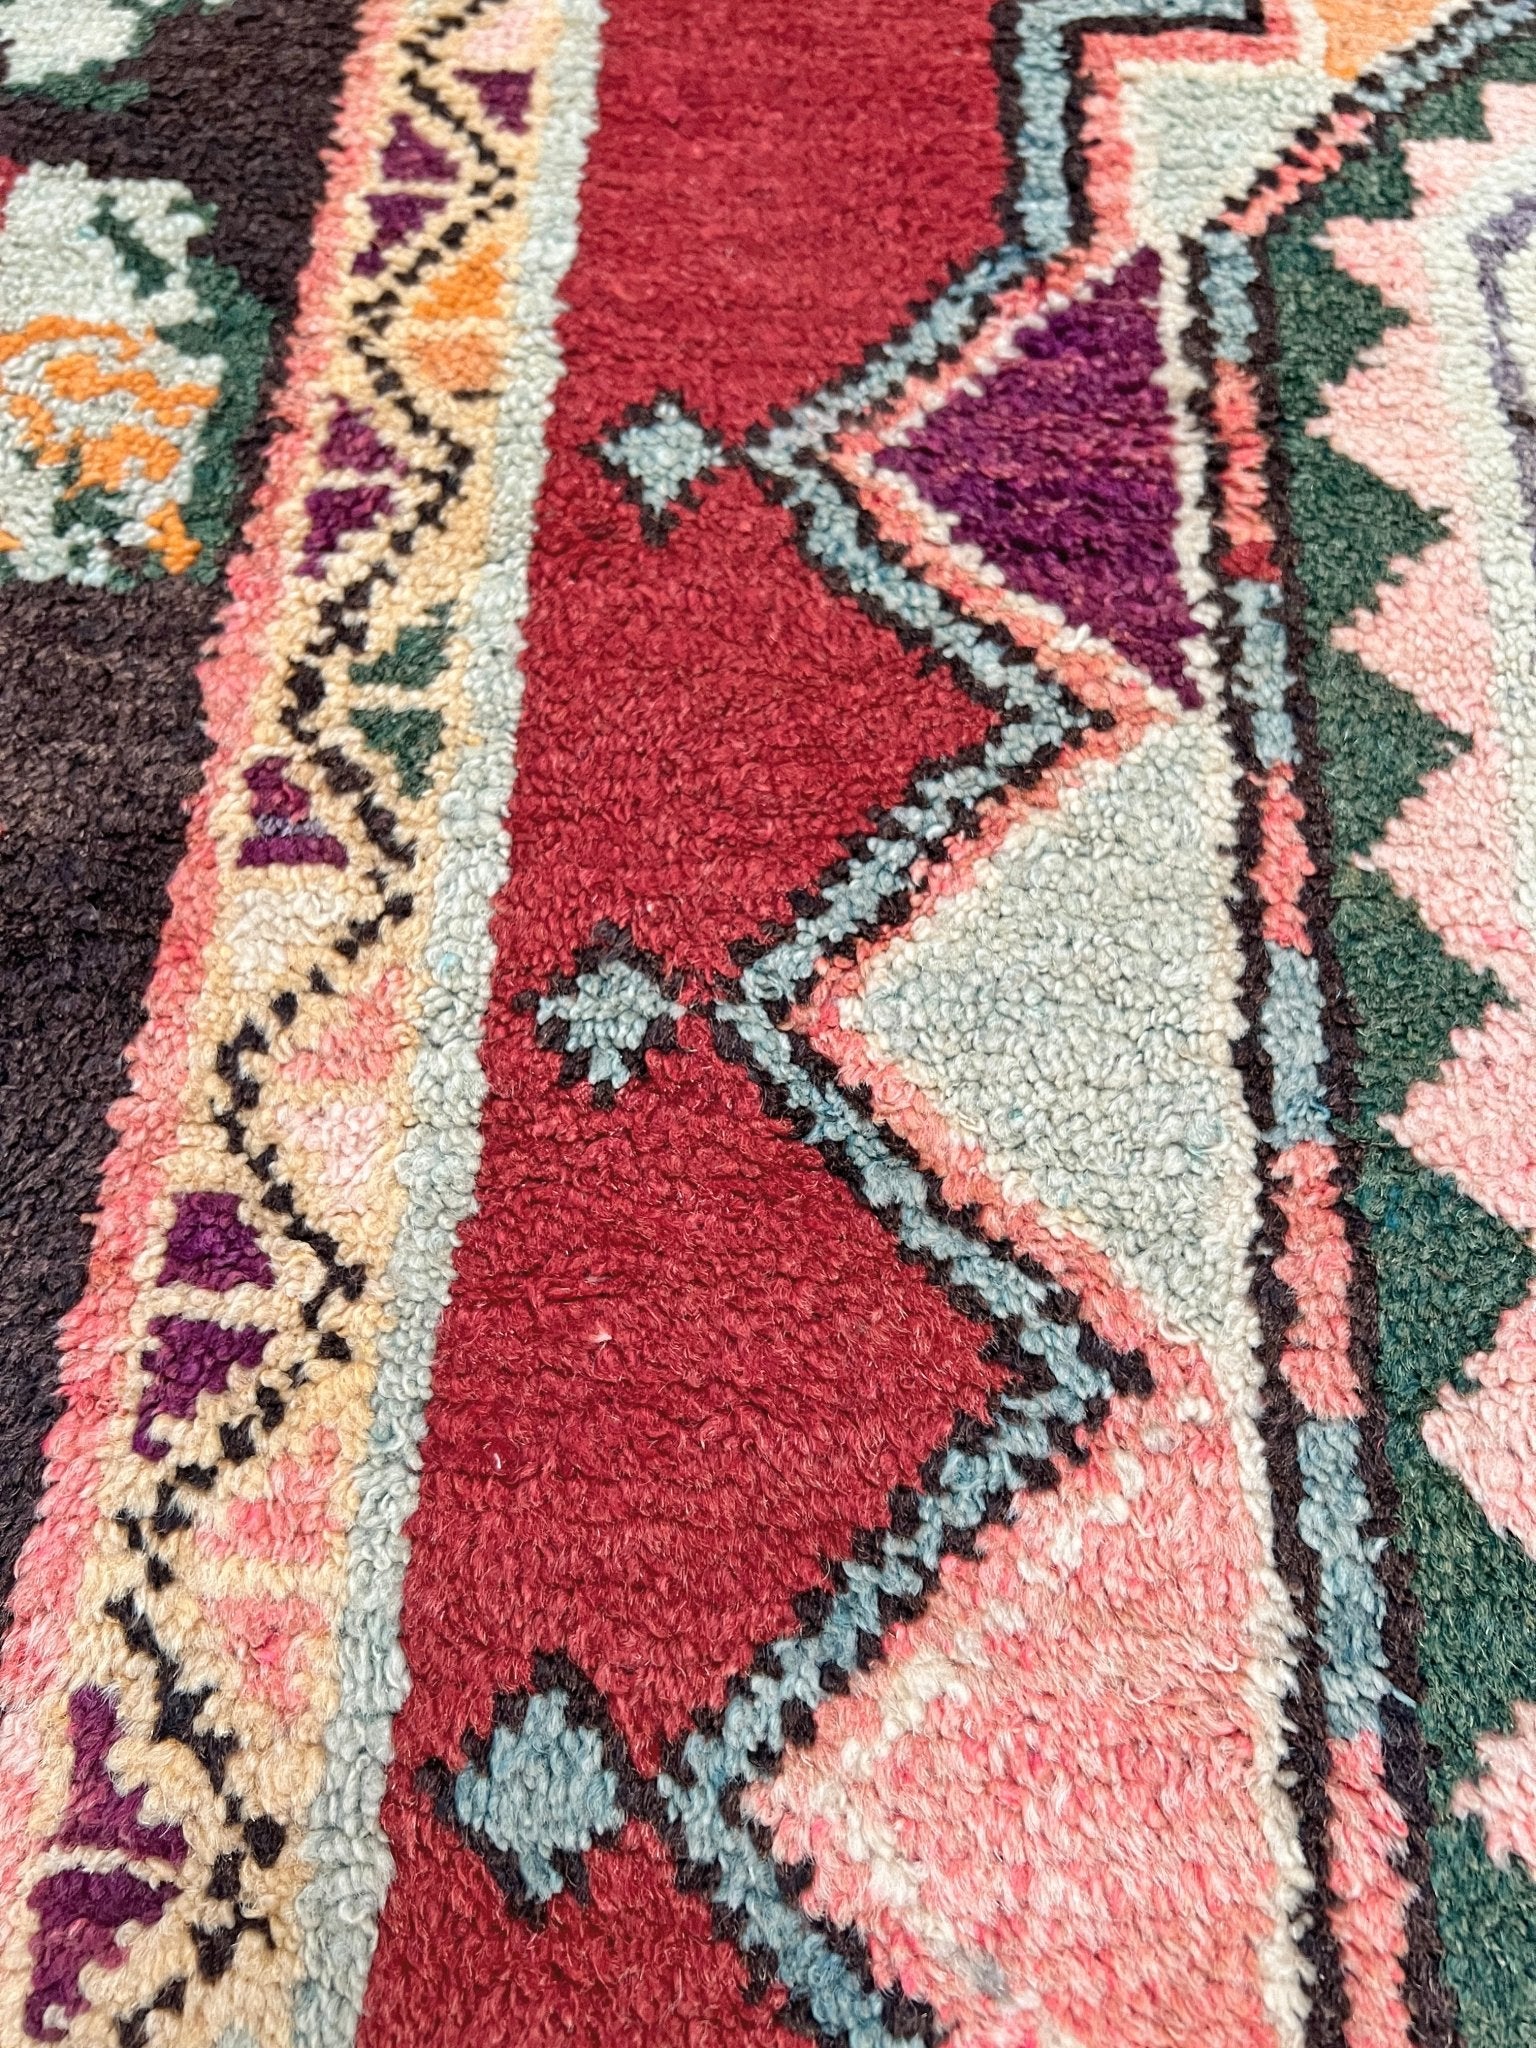 derbend karabagh caucasian rug. Oriental rug shop San Francisco Bay Area. Wide runner handmade wool rug. Buy rug online